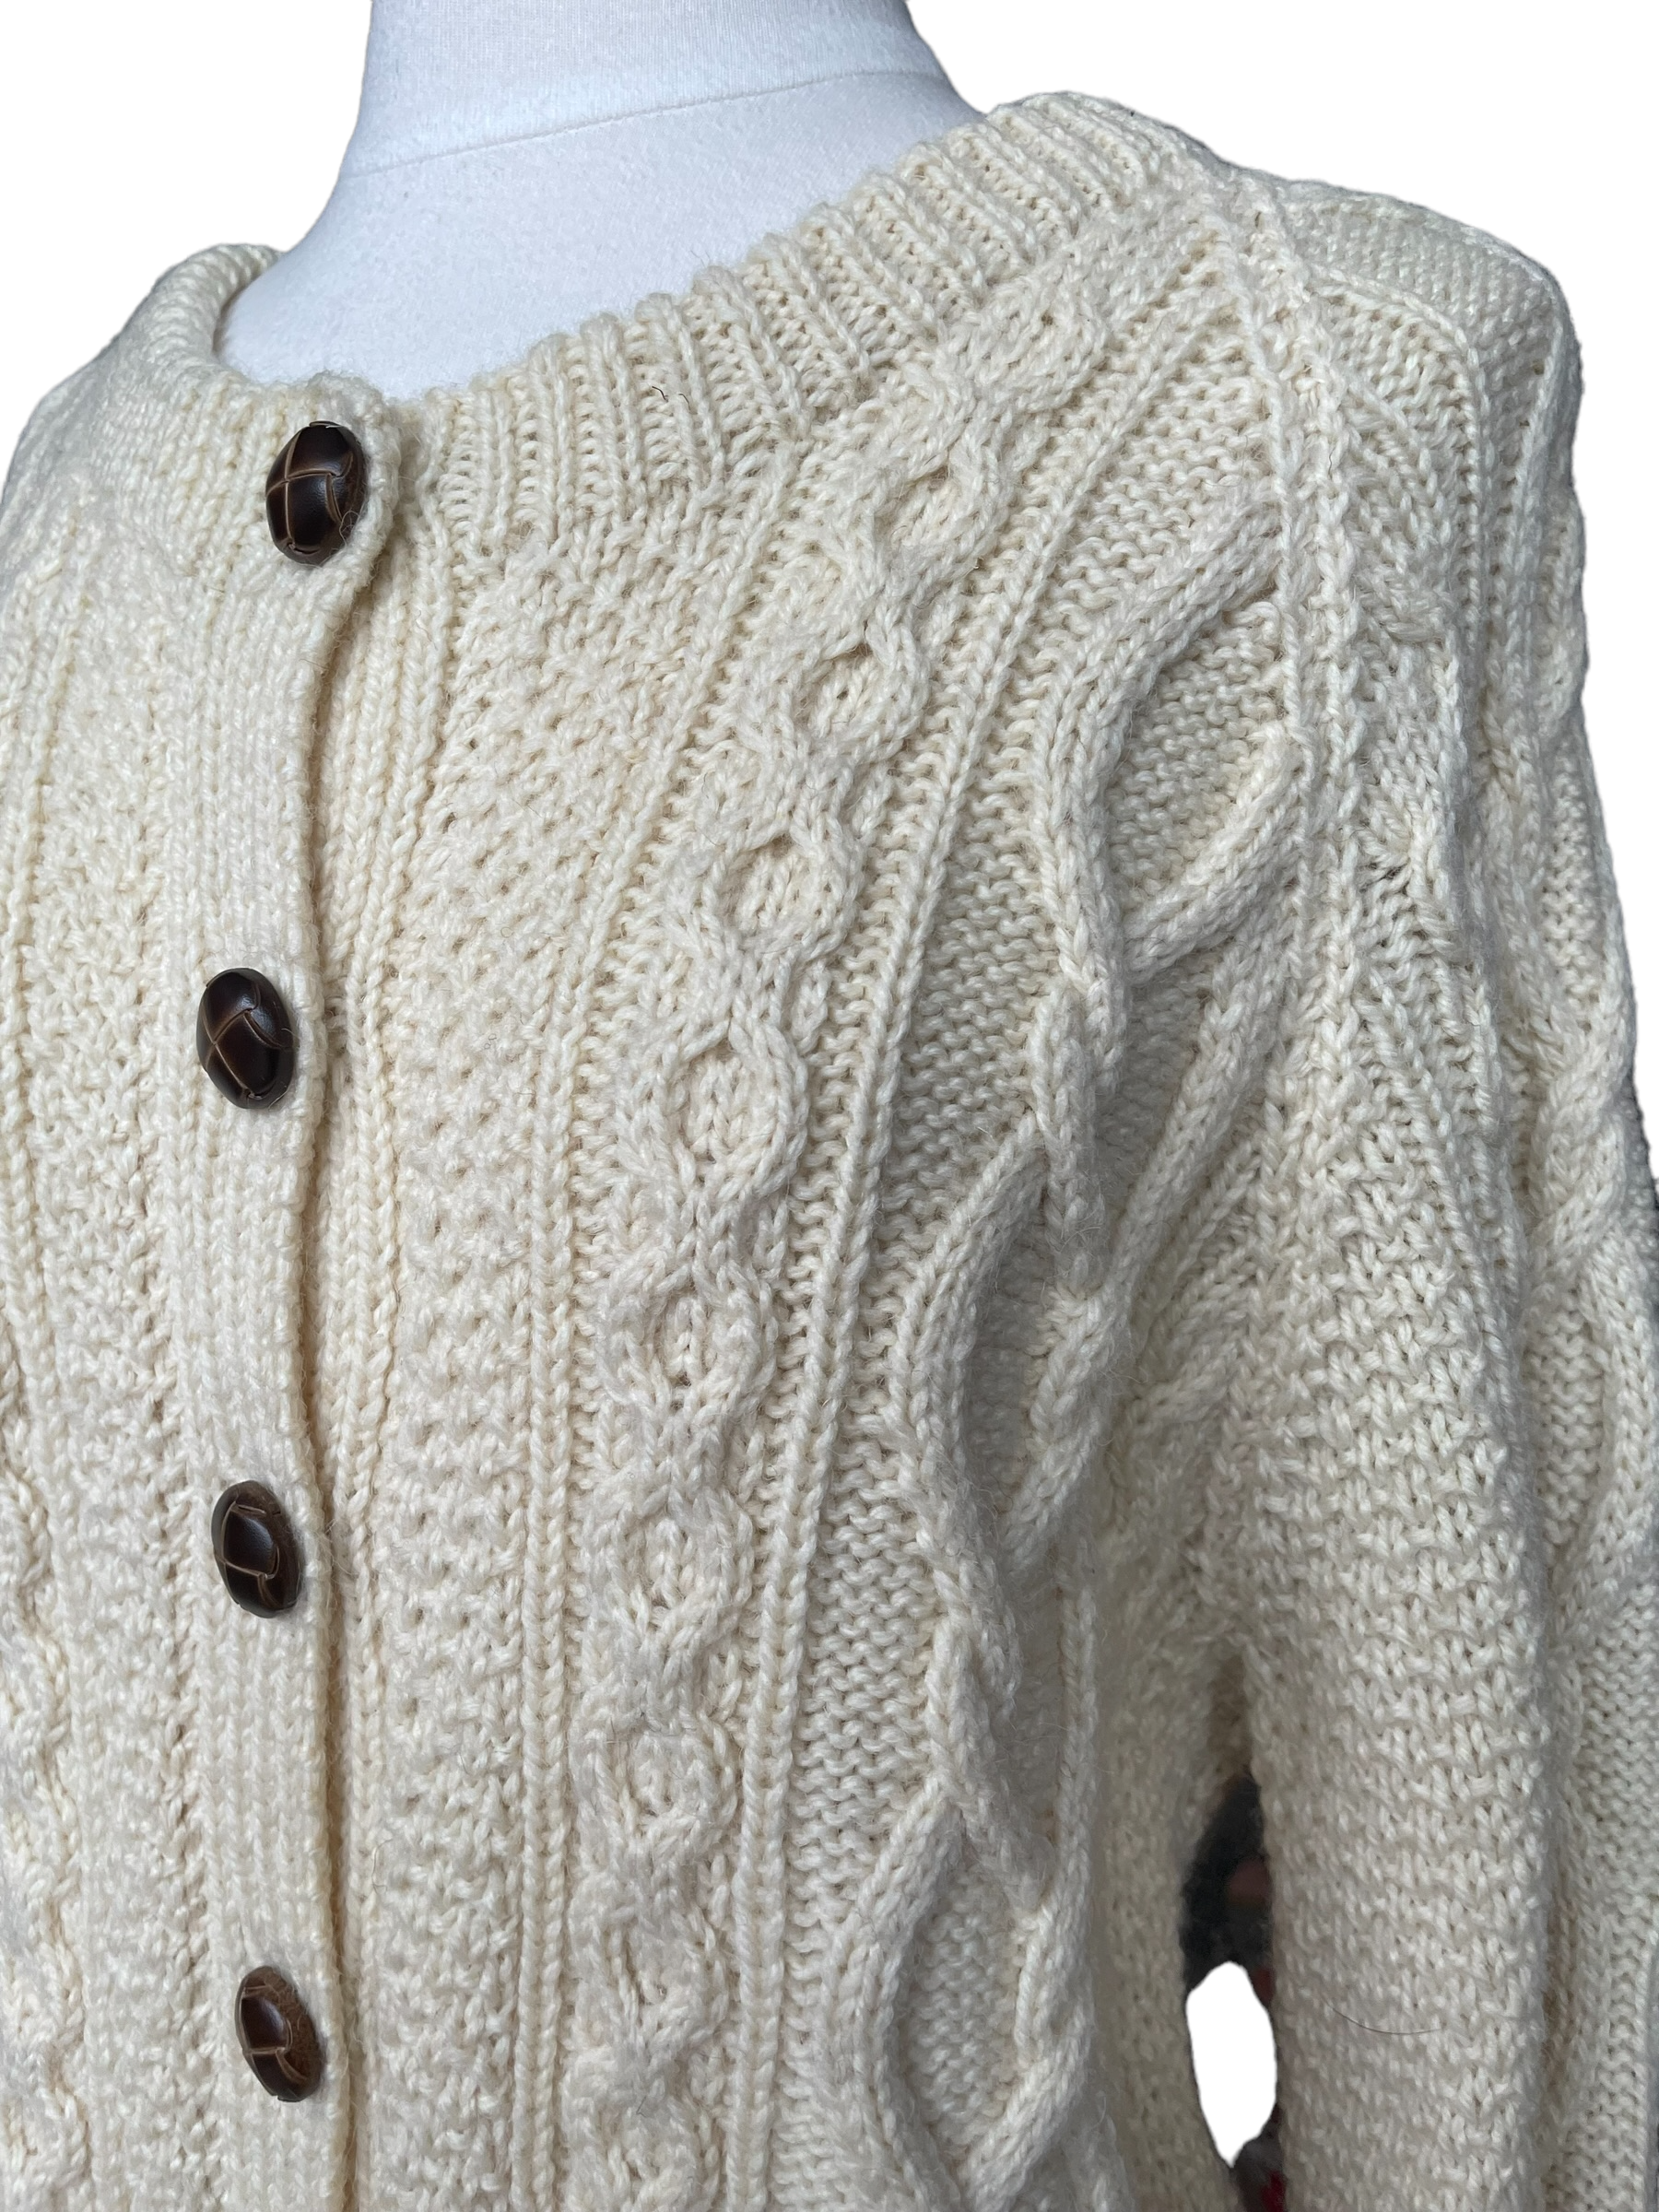 Vintage 1980s Blarney Mills Aran Cardigan | Barn Owl Vintage | Seattle Vintage Sweaters Left side front shoulder view